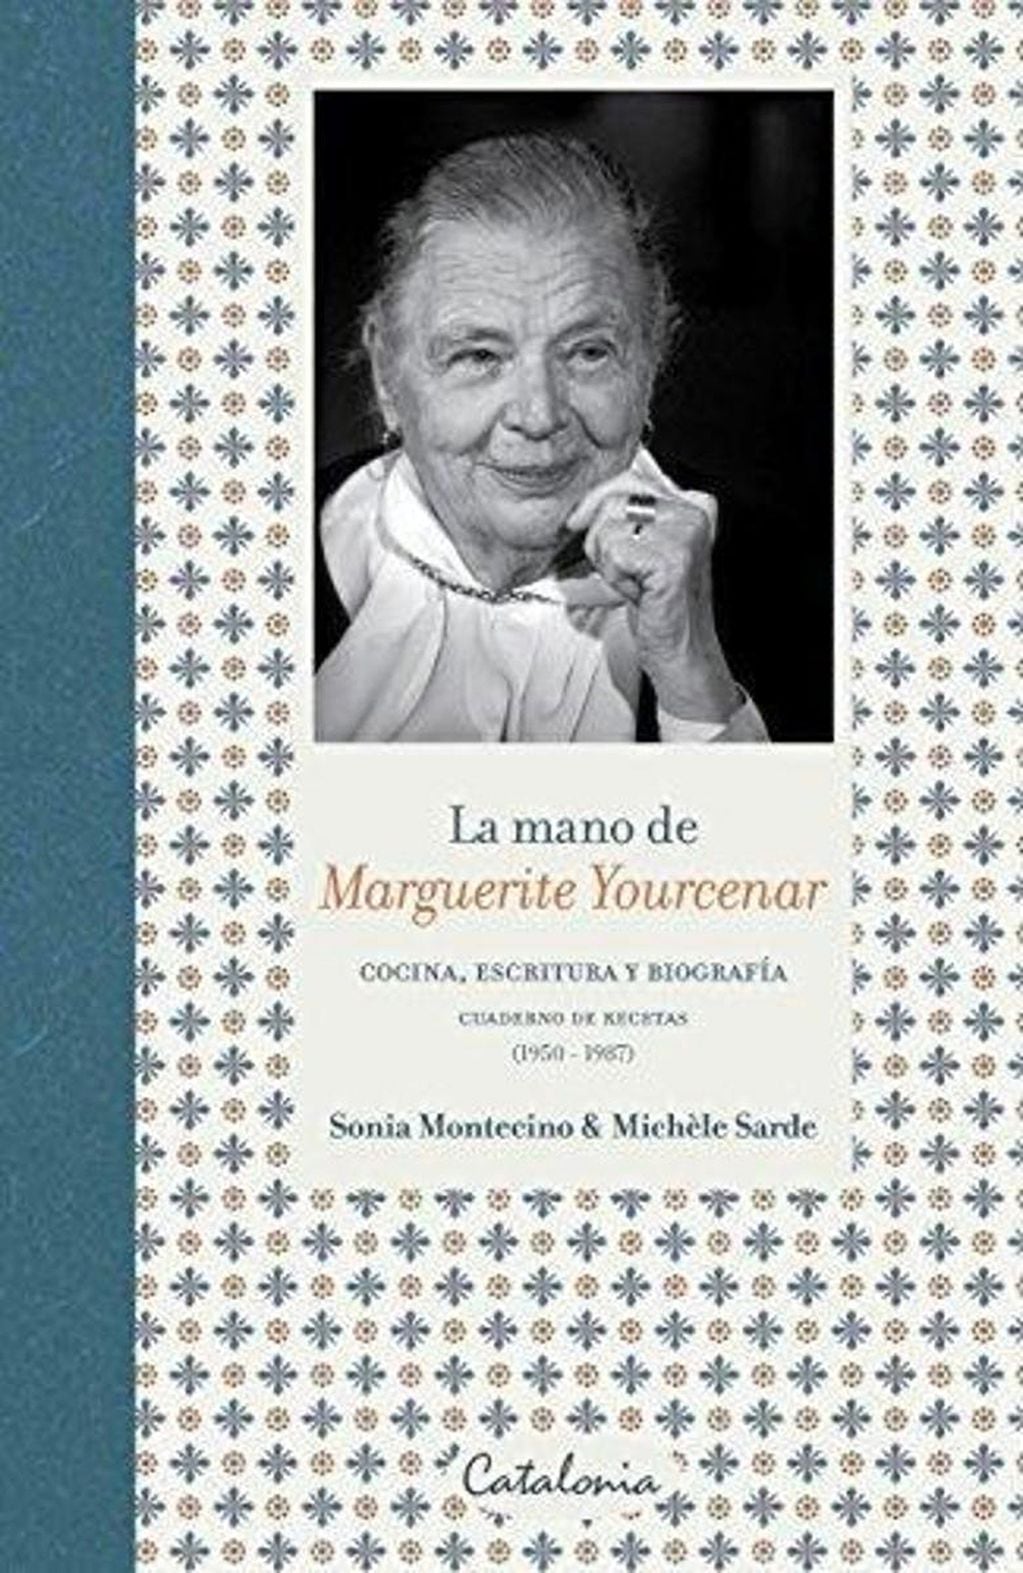 Esta biografía de Marguerite Yourcenar, escrita por la antropóloga Sonia Montecino y la ensayista Michele Sarde, funciona como opúsculo culinario de la autora y mirilla a su manera de ser.